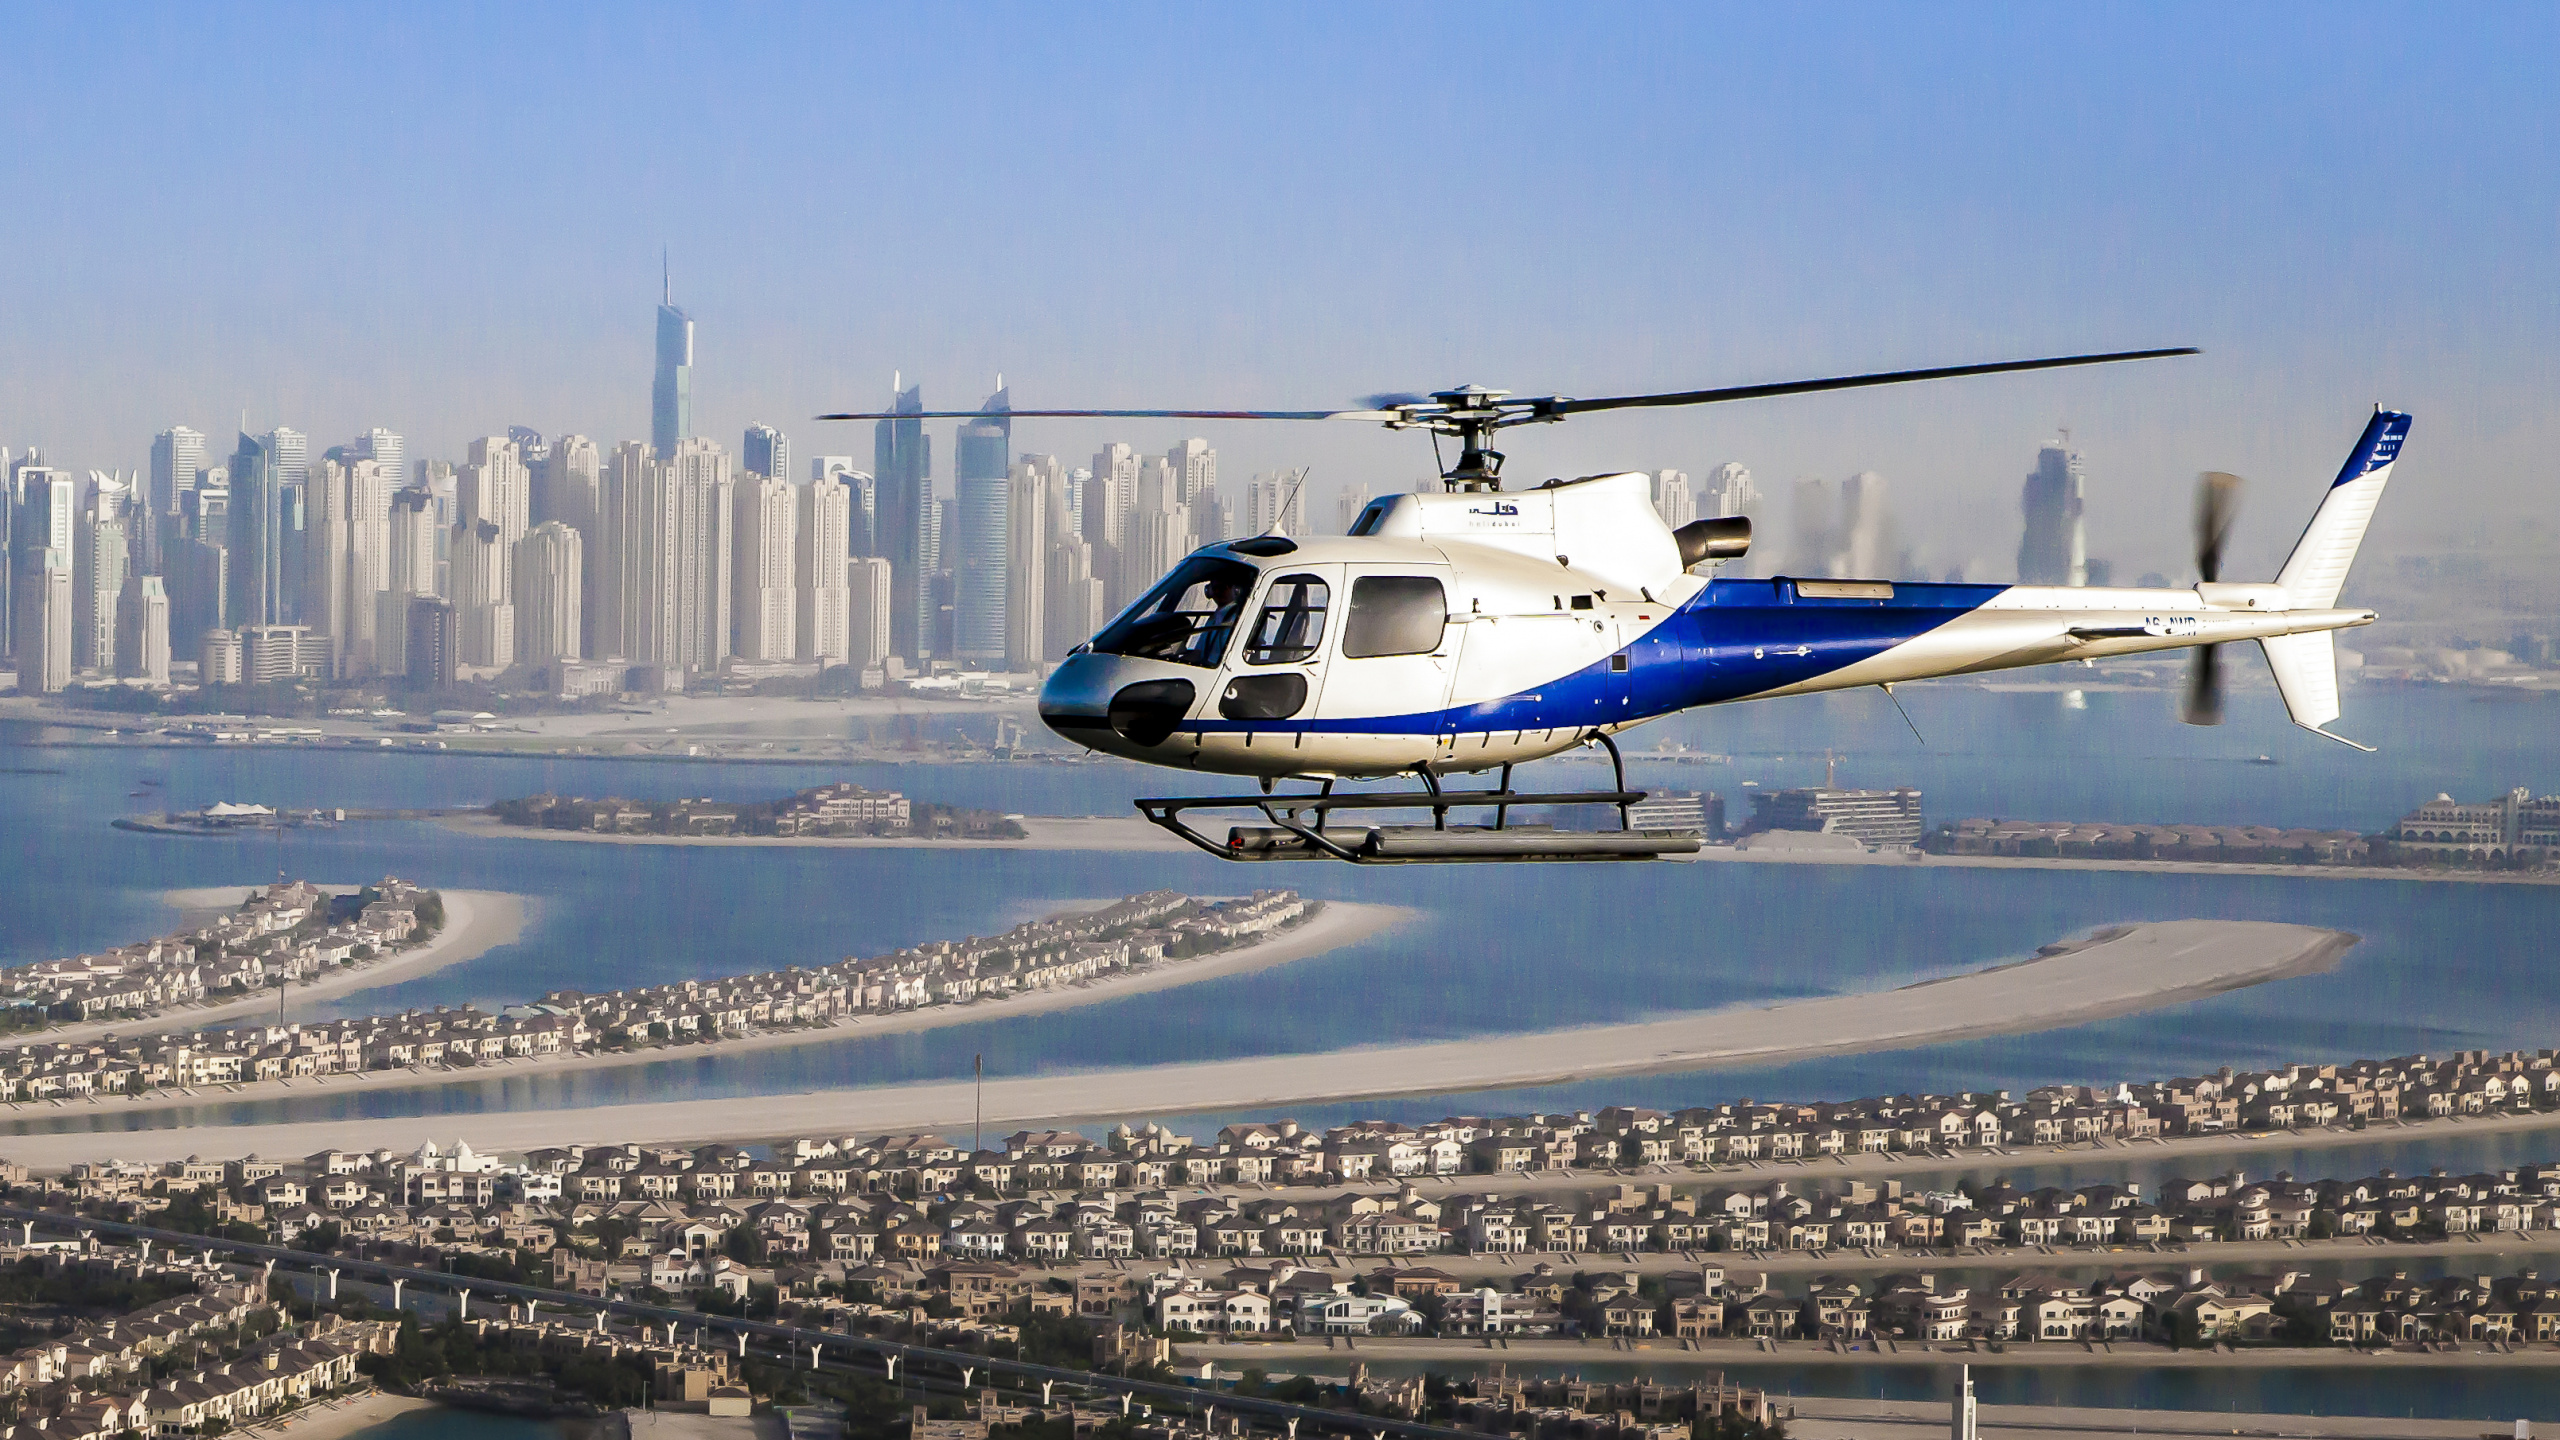 Helicóptero Blanco y Azul Sobrevolando Los Edificios de la Ciudad Durante el Día. Wallpaper in 2560x1440 Resolution